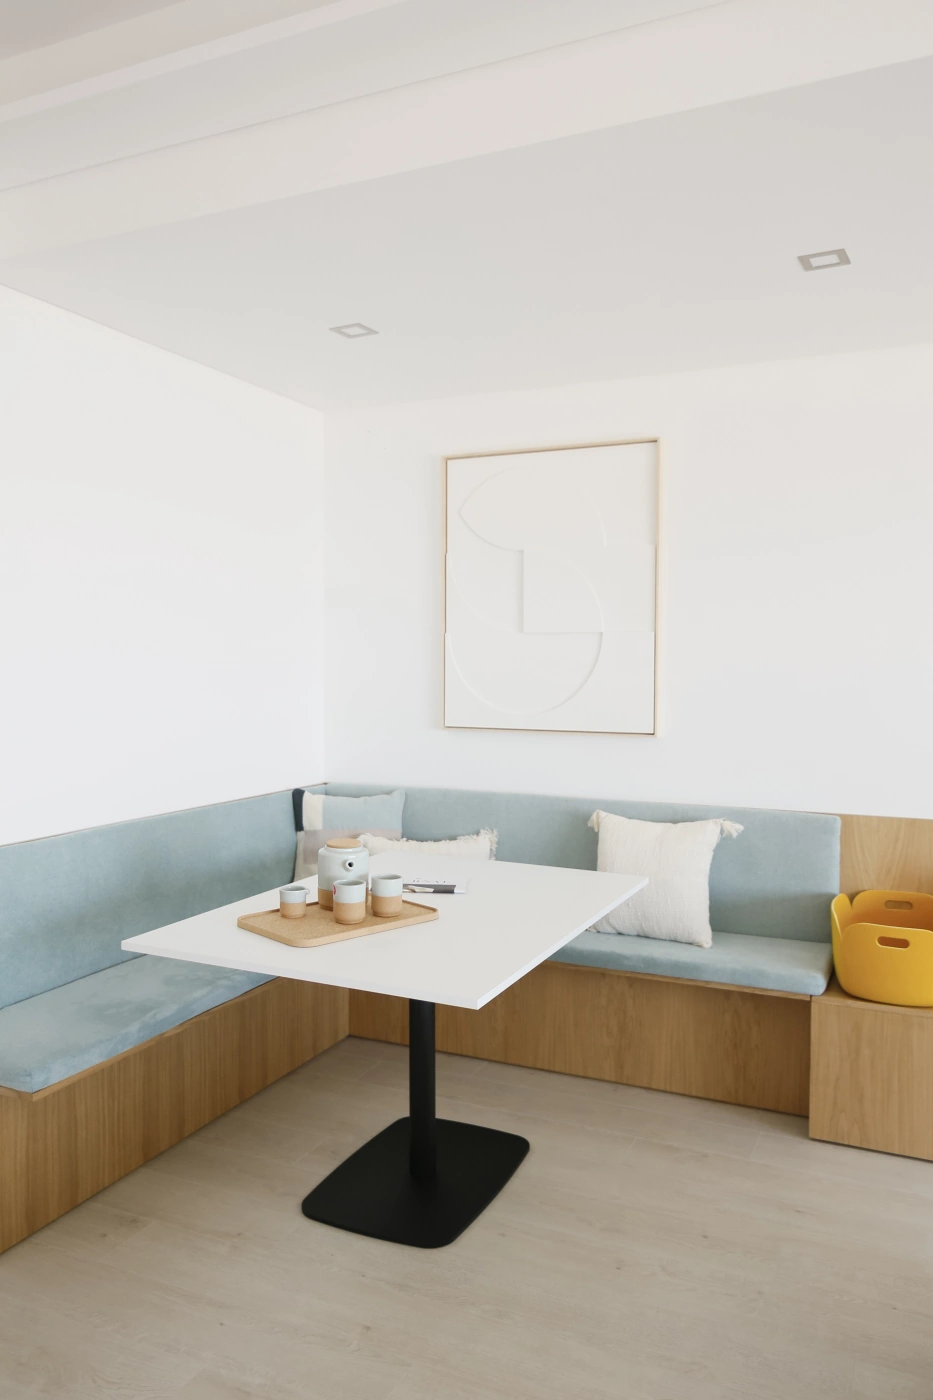 Projeto de design de interior de quarto by casascomdesign - Cópia